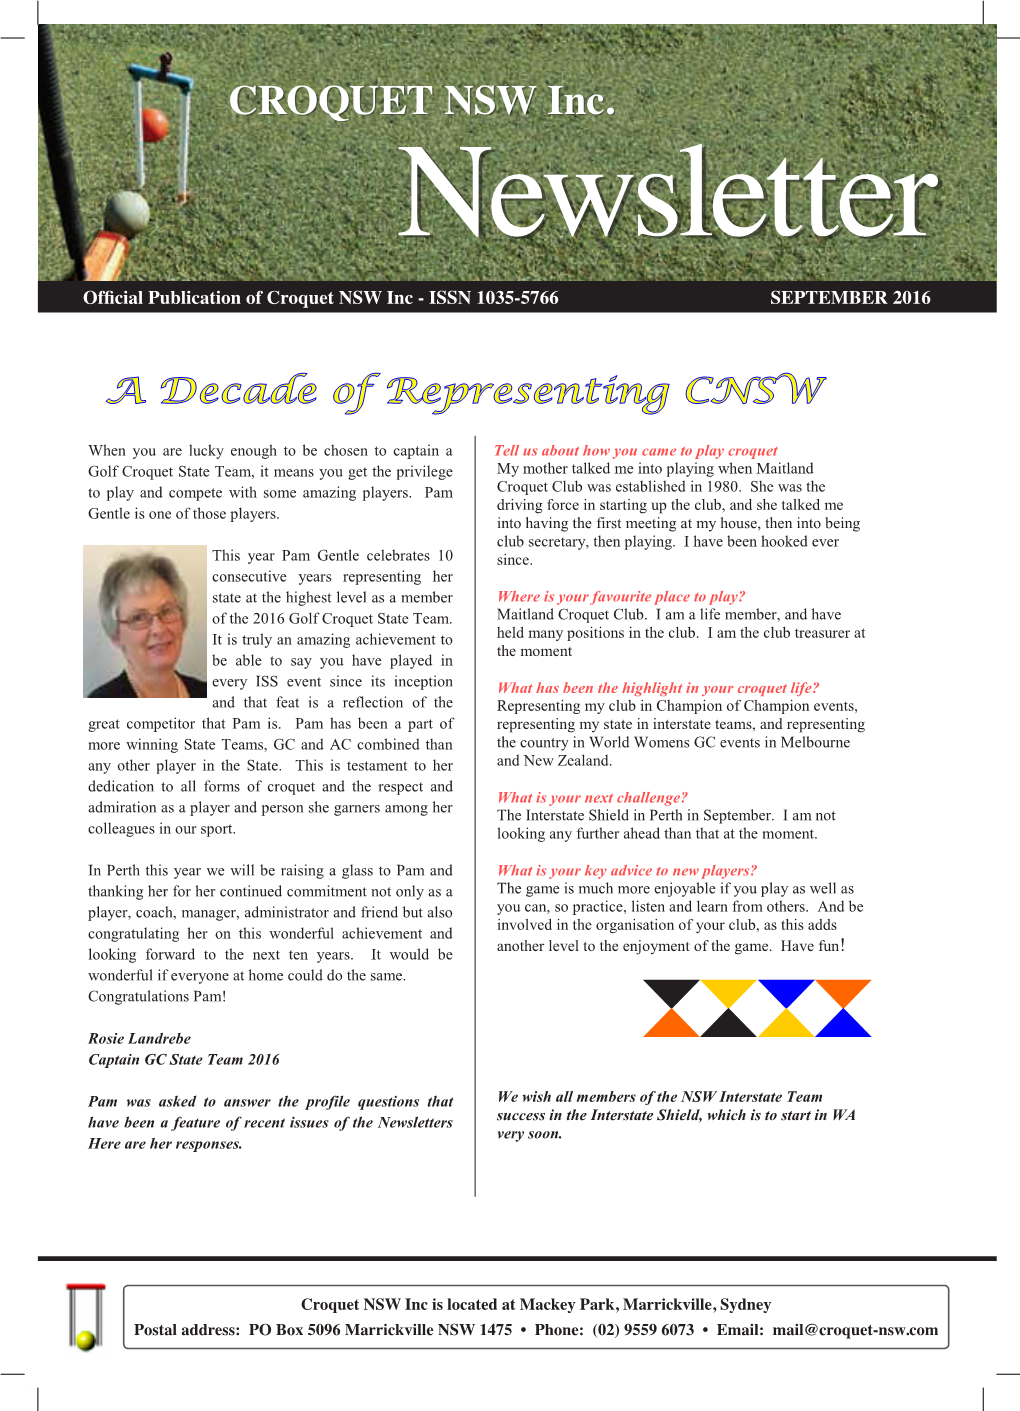 CNSW Newsletter, September 2016